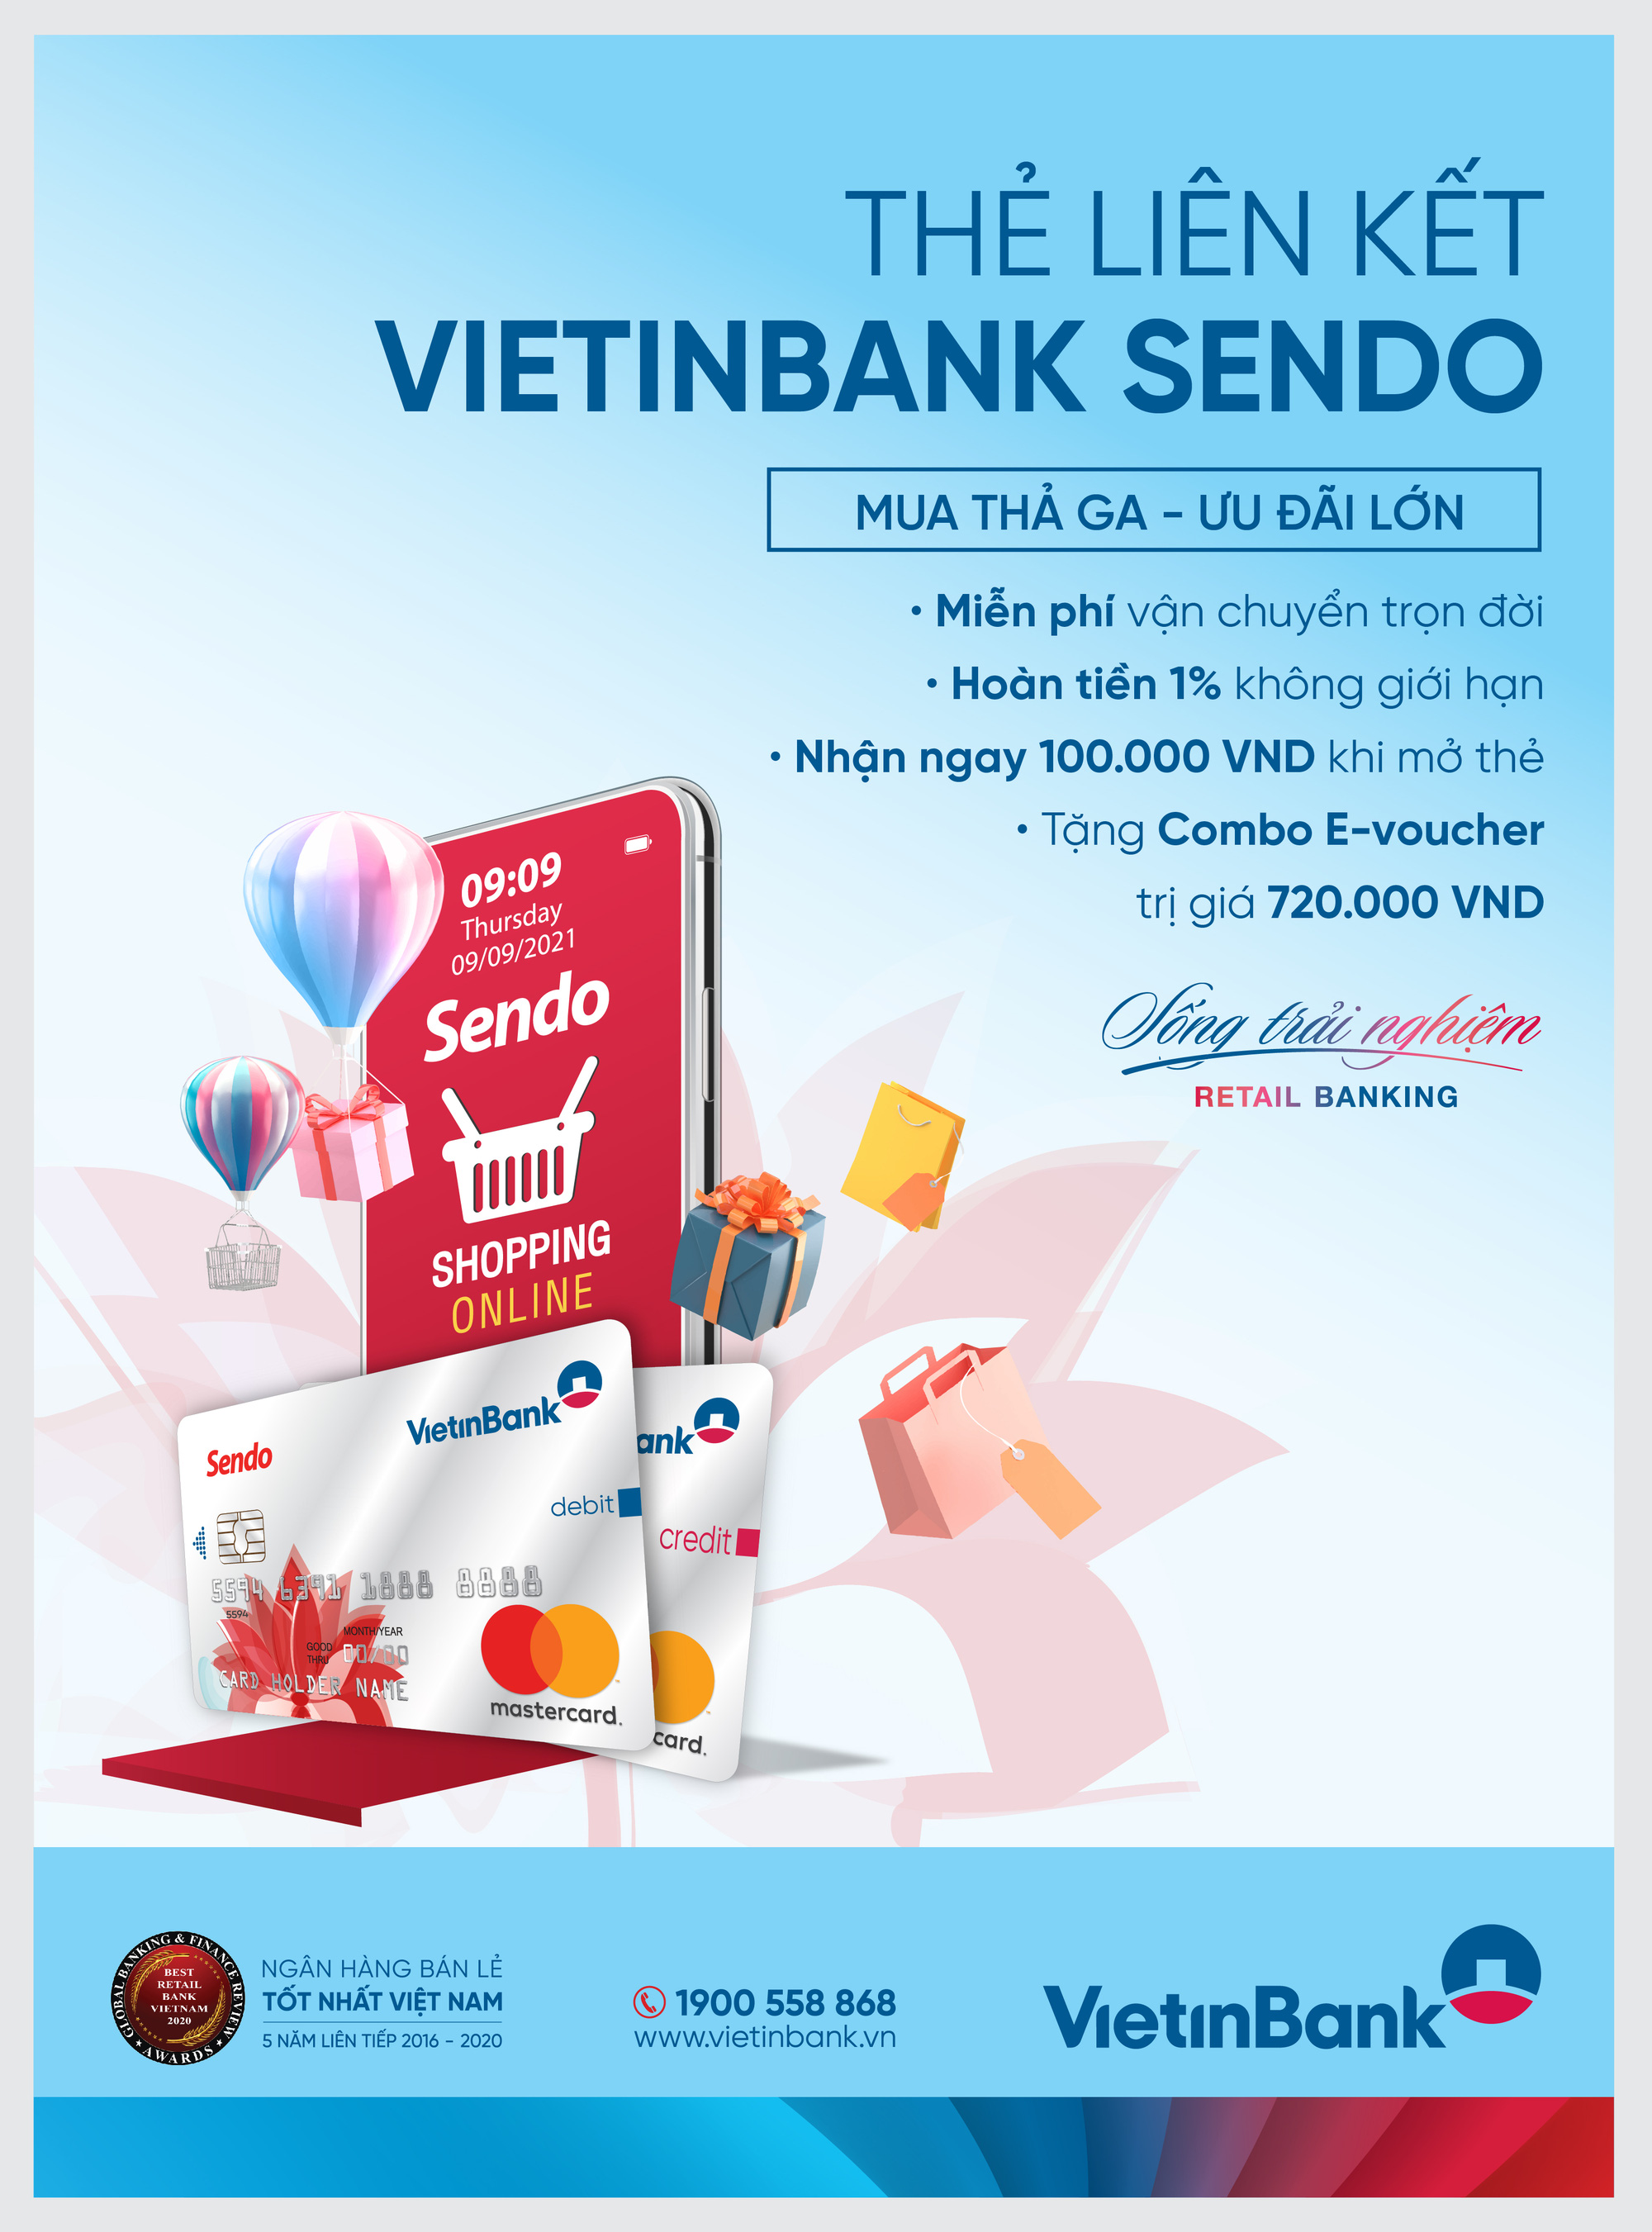 Freeship trọn đời - Săn deal cực đã trên Sendo cùng VietinBank - Ảnh 1.